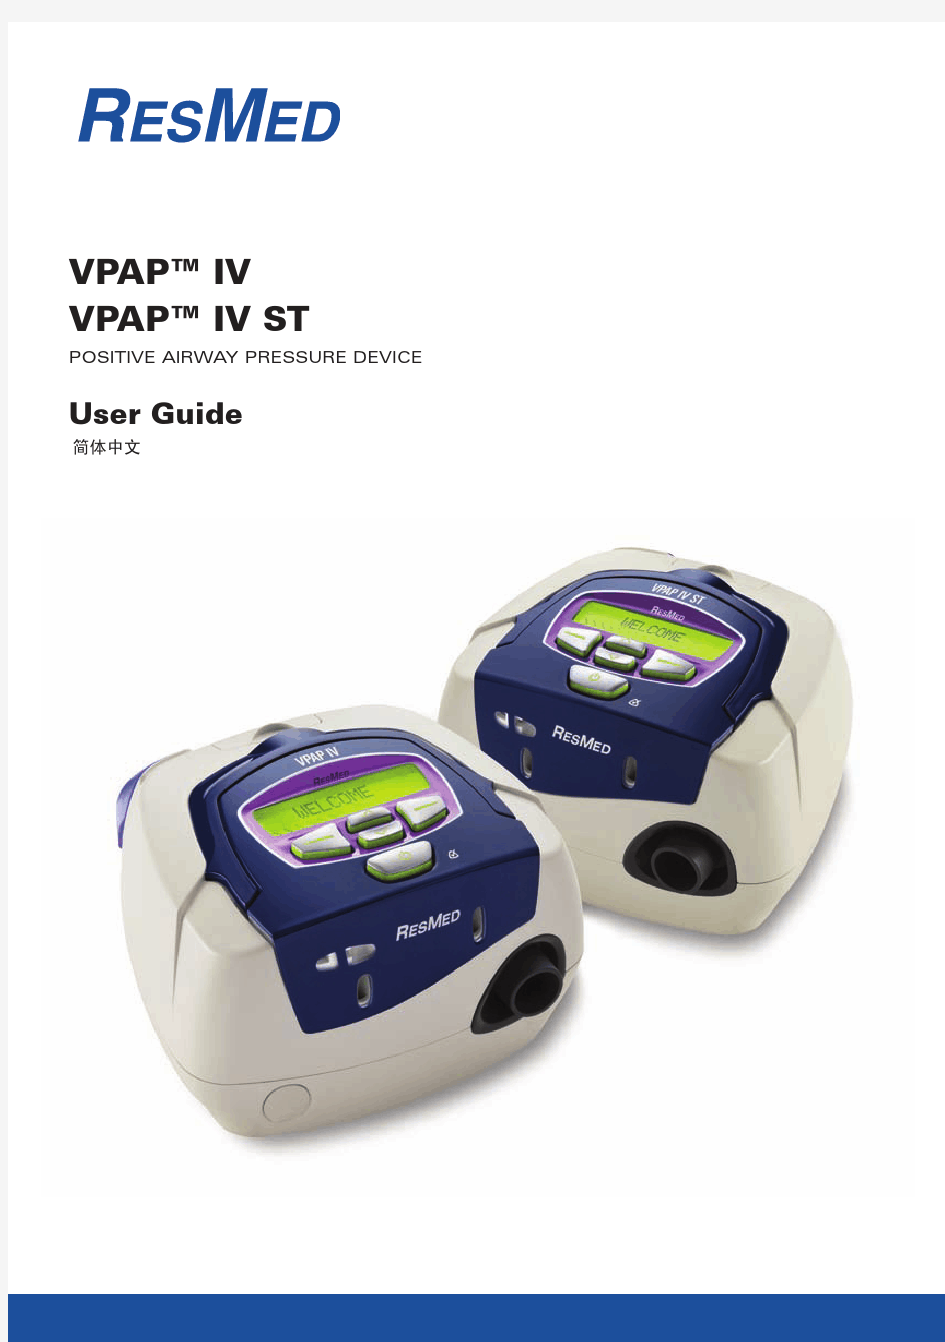 瑞思迈呼吸机vpap-iv-vpap-iv-st_使用说明手册